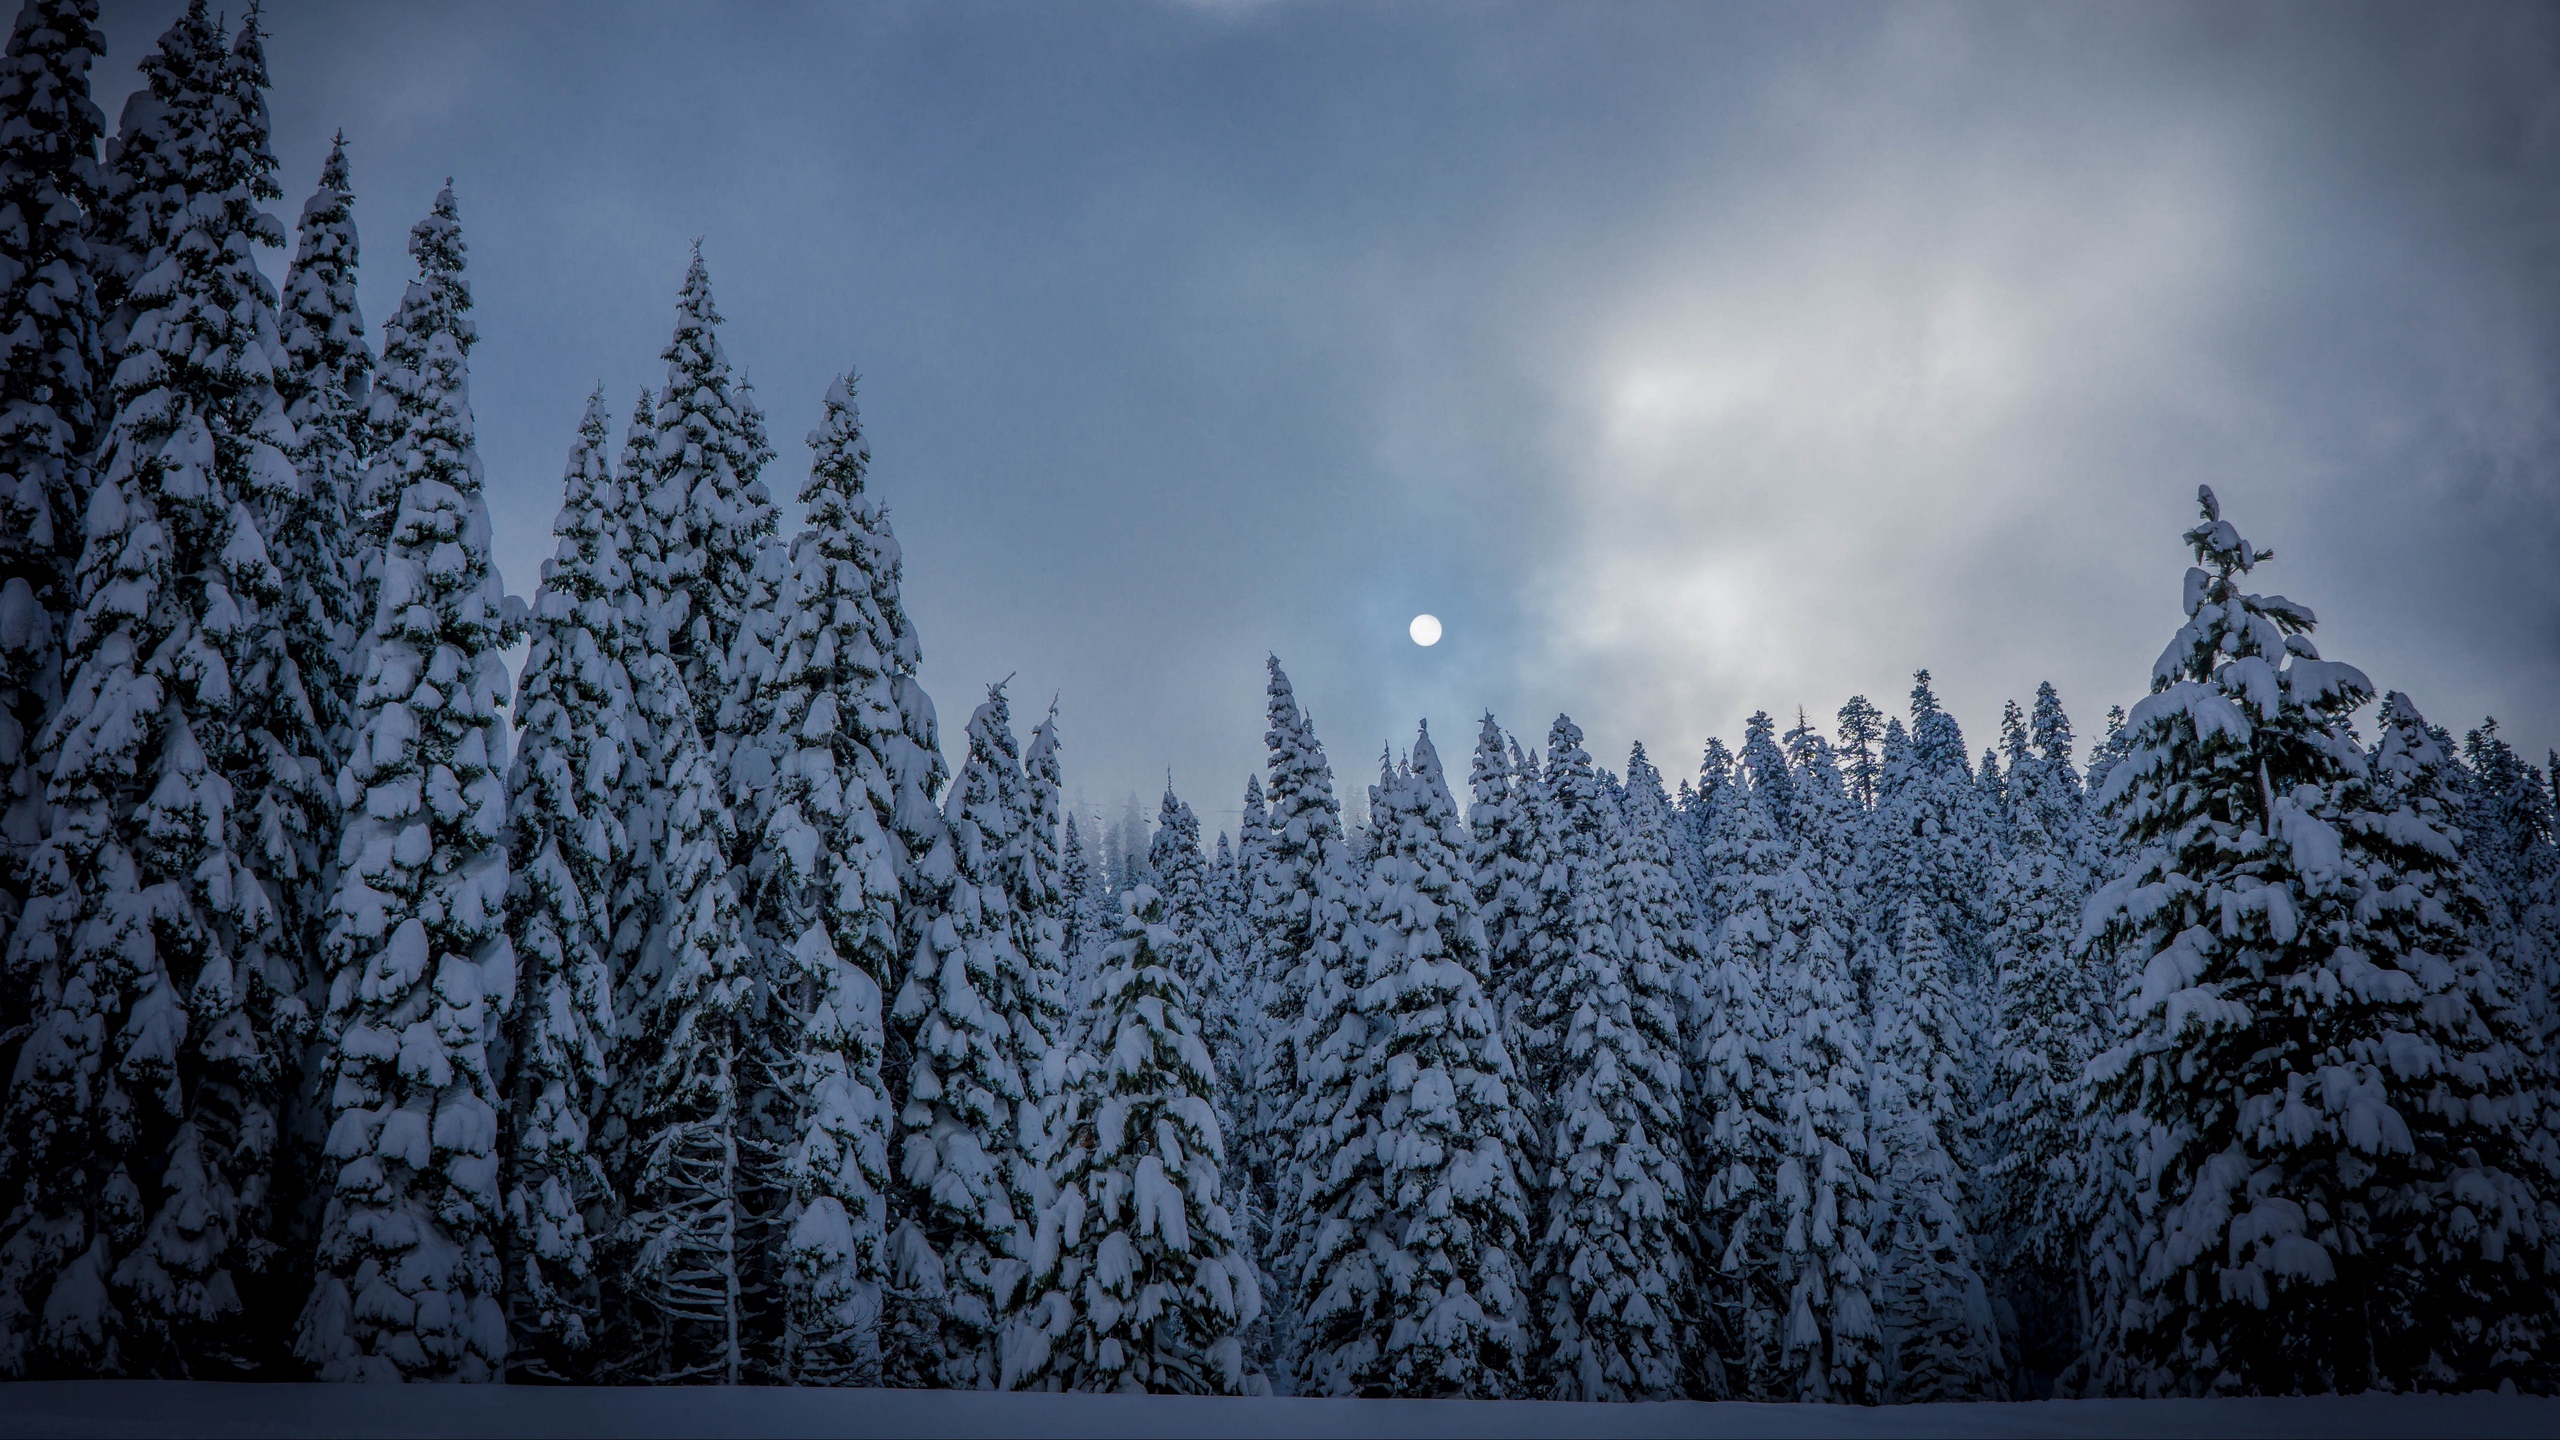 Download wallpaper 2560x1440 winter, fir, snow, forest